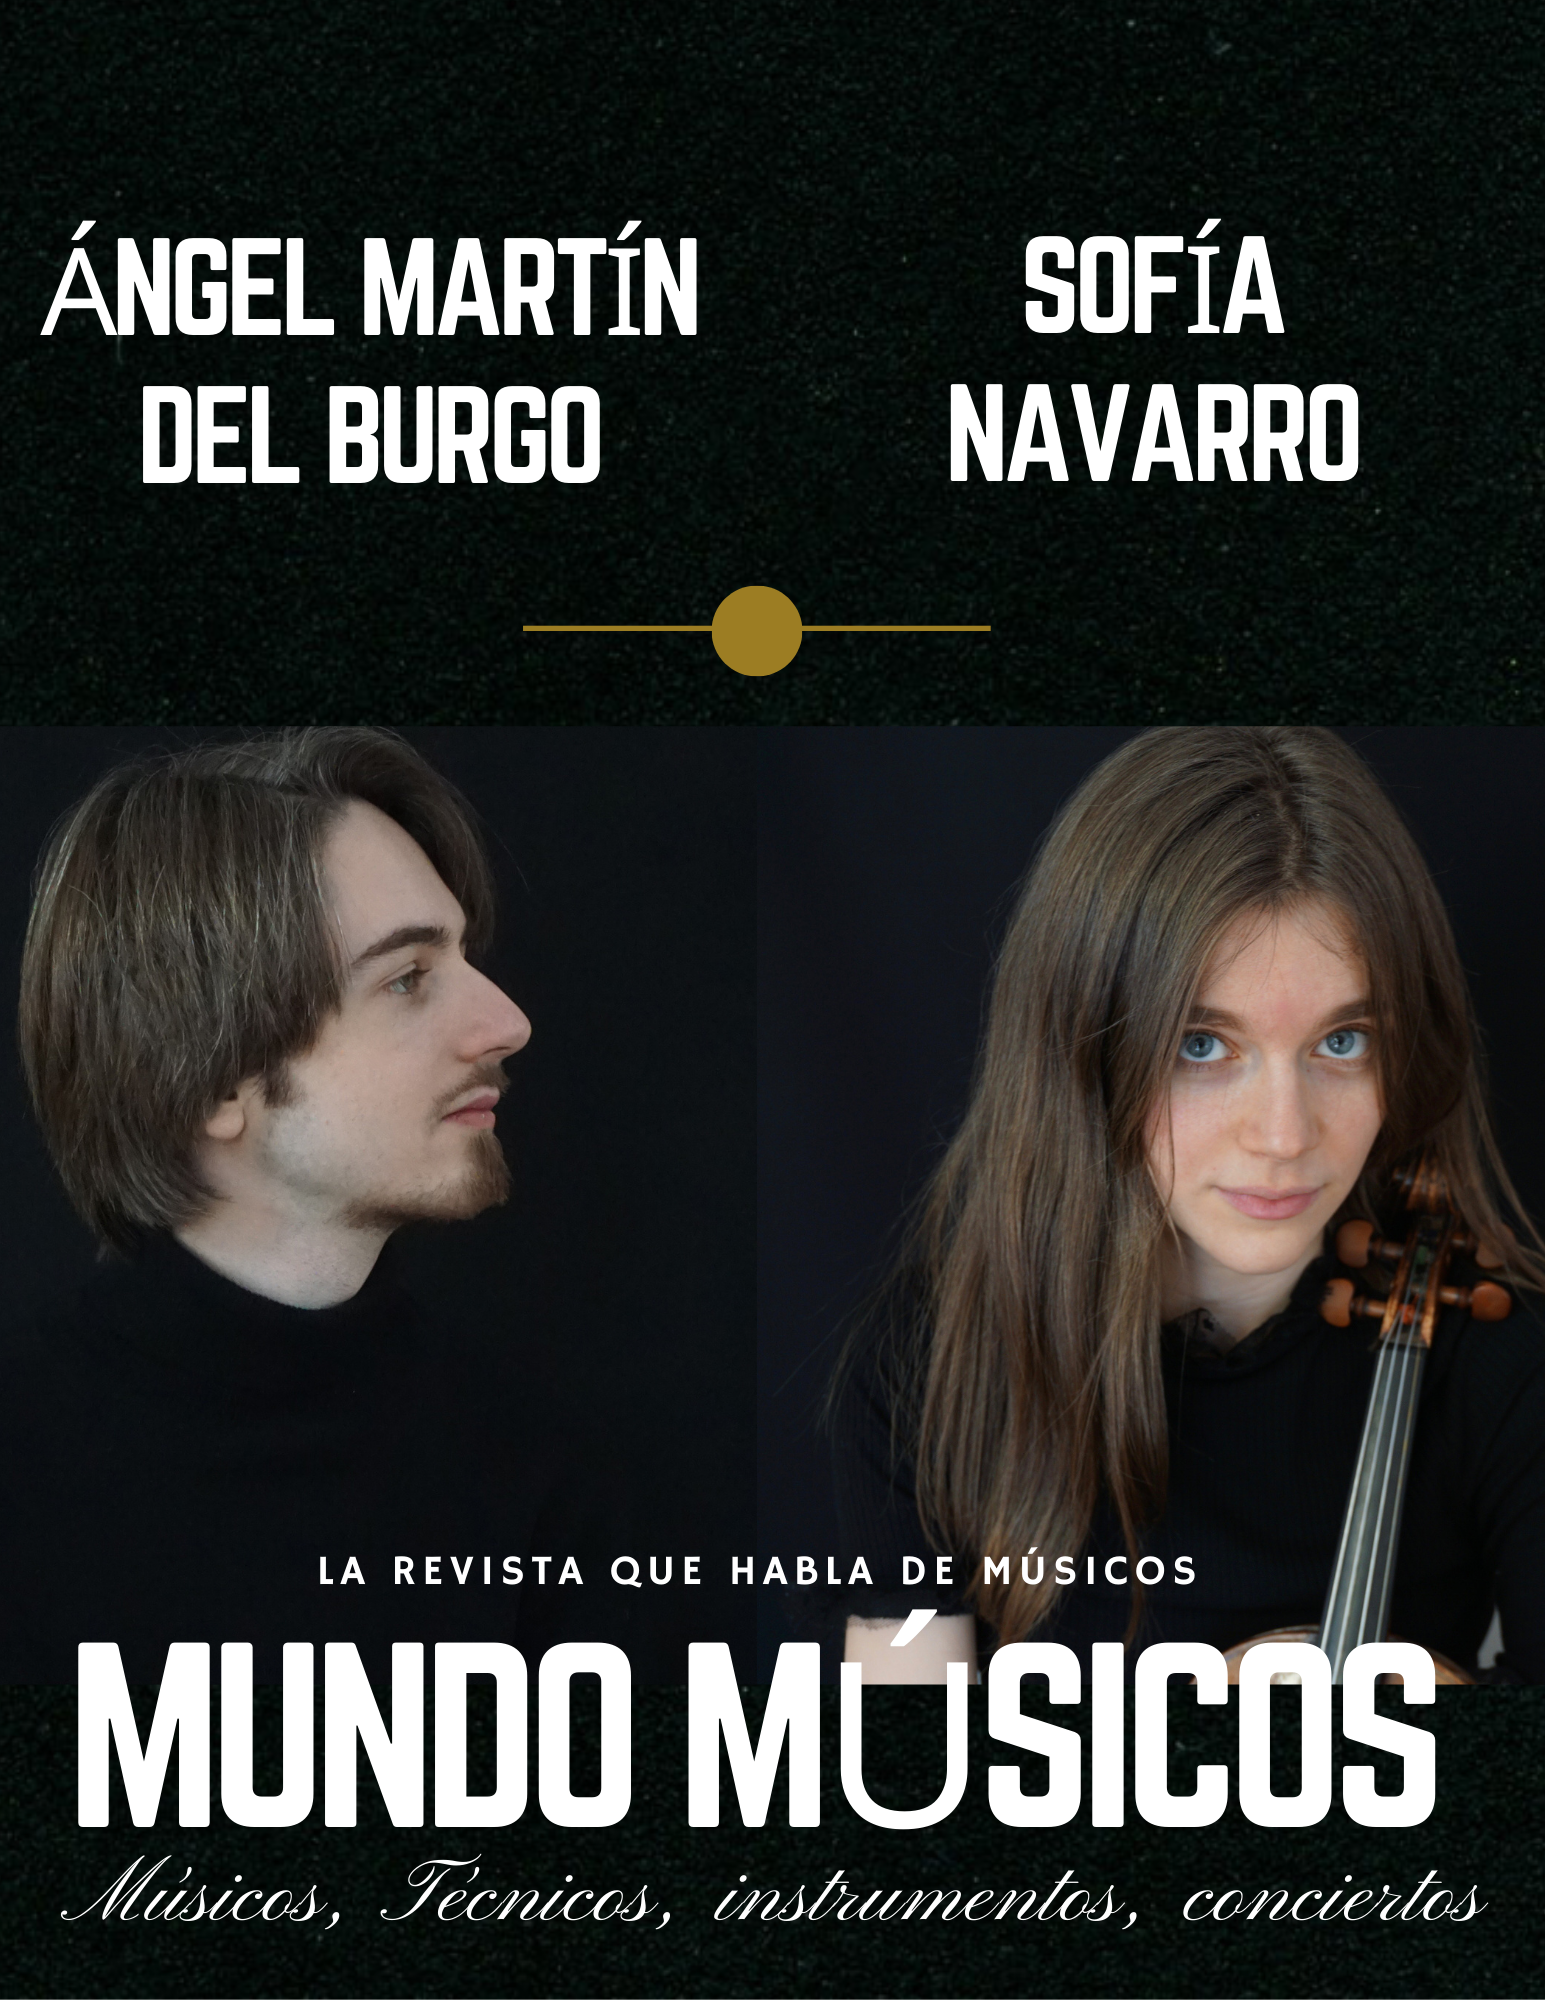 Sofía Navarro, Violín. Ángel Martín del Burgo, piano